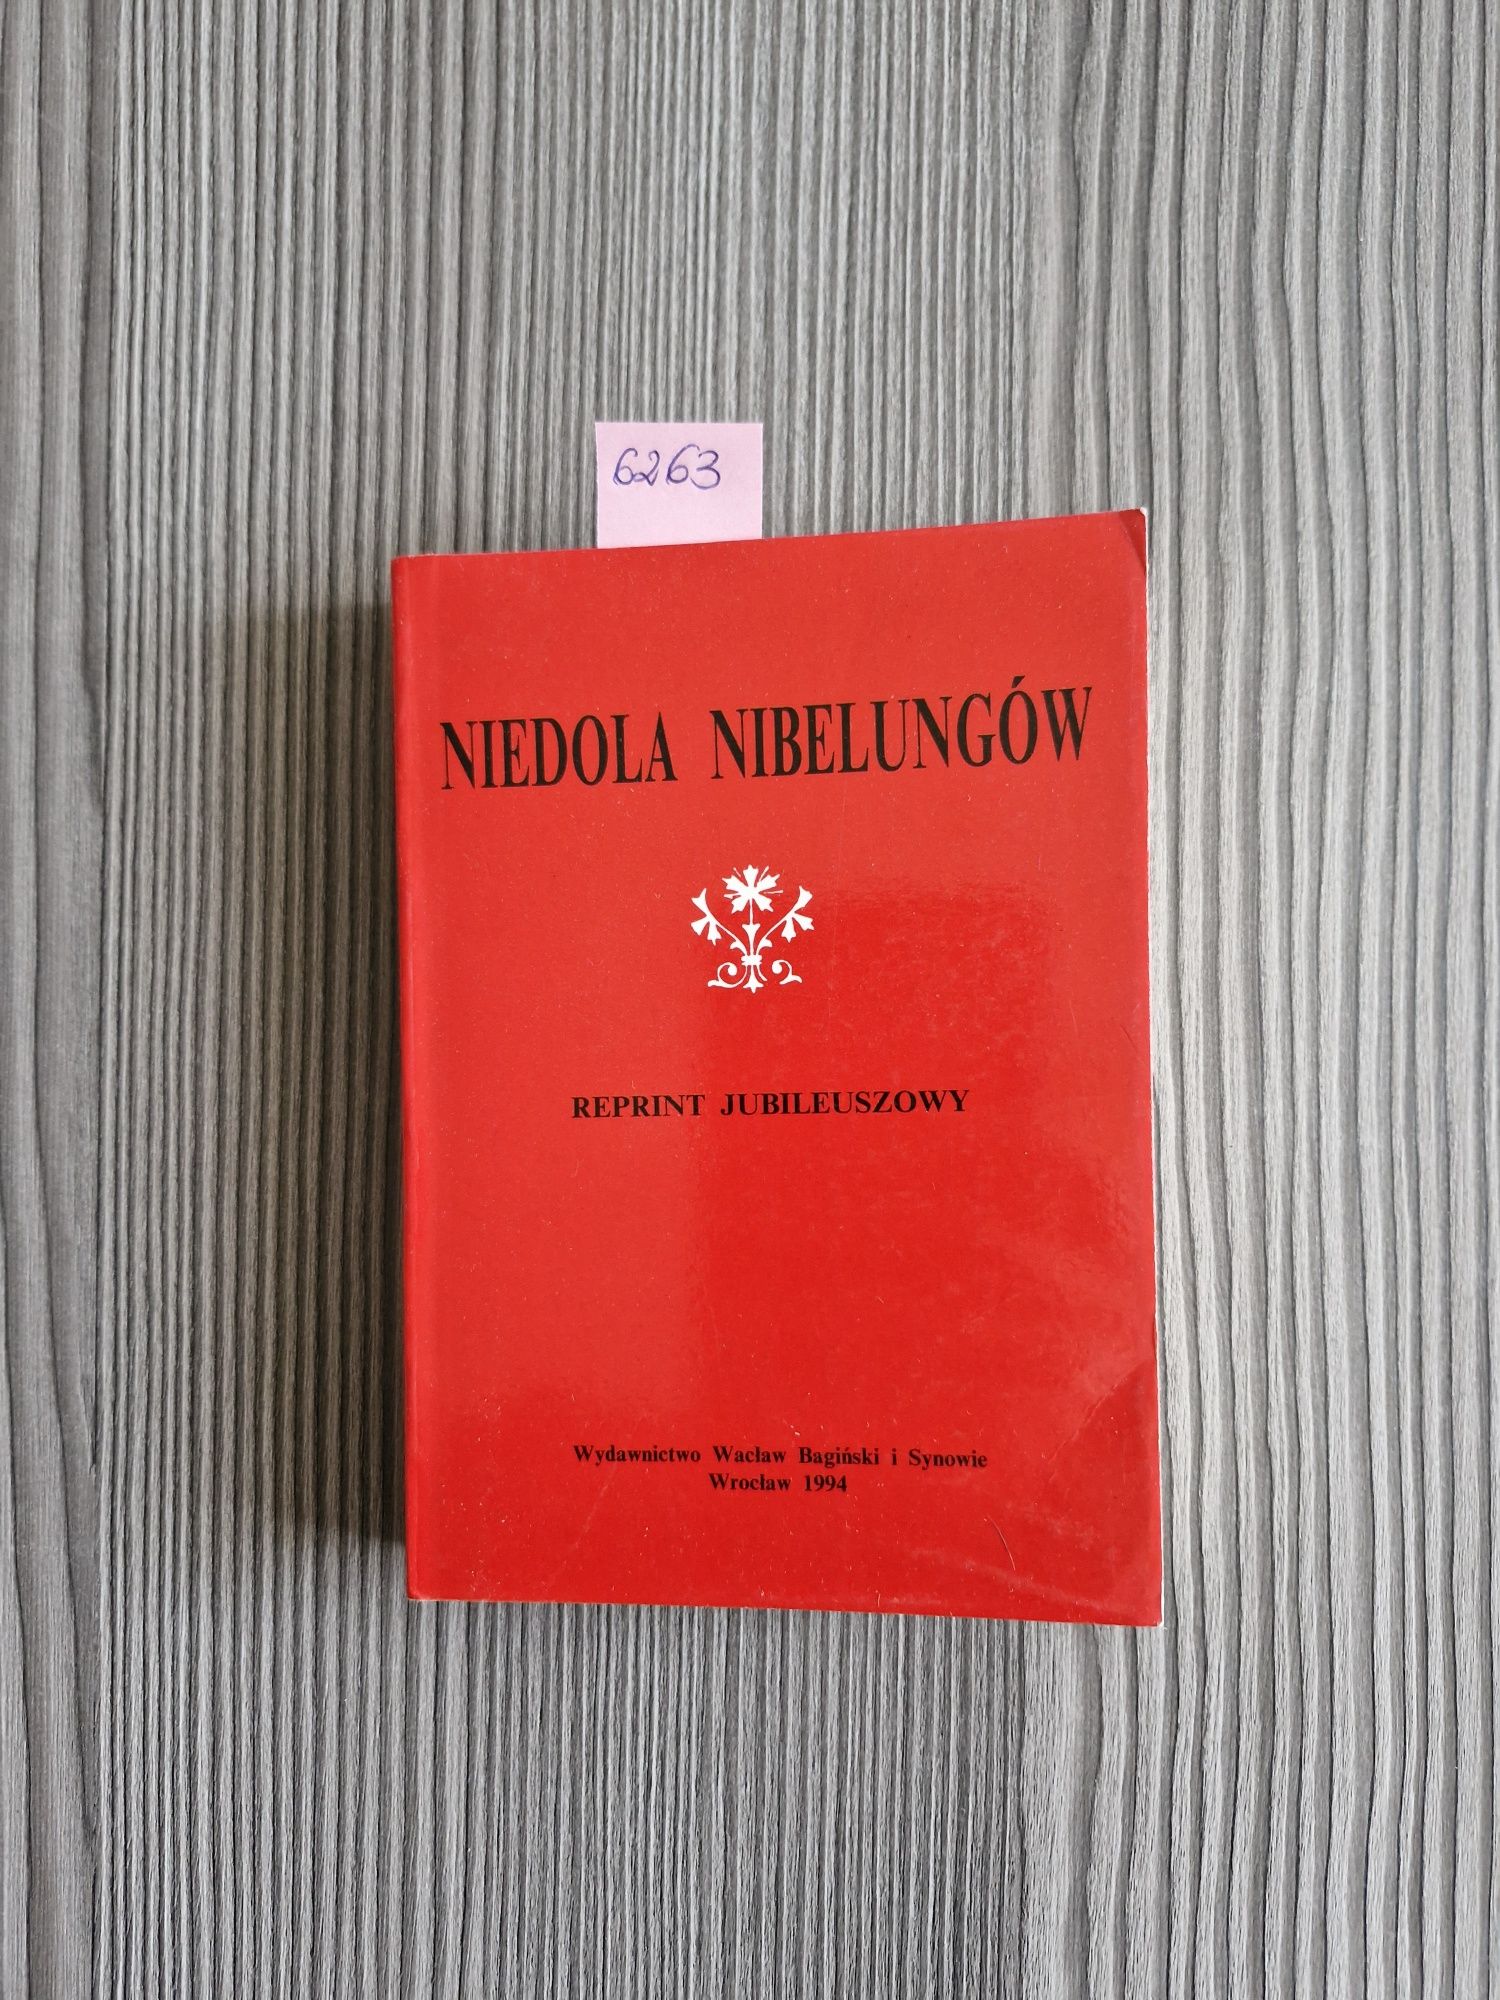 6263. "Niedola Nibelungów" Reprint Jubileuszowy